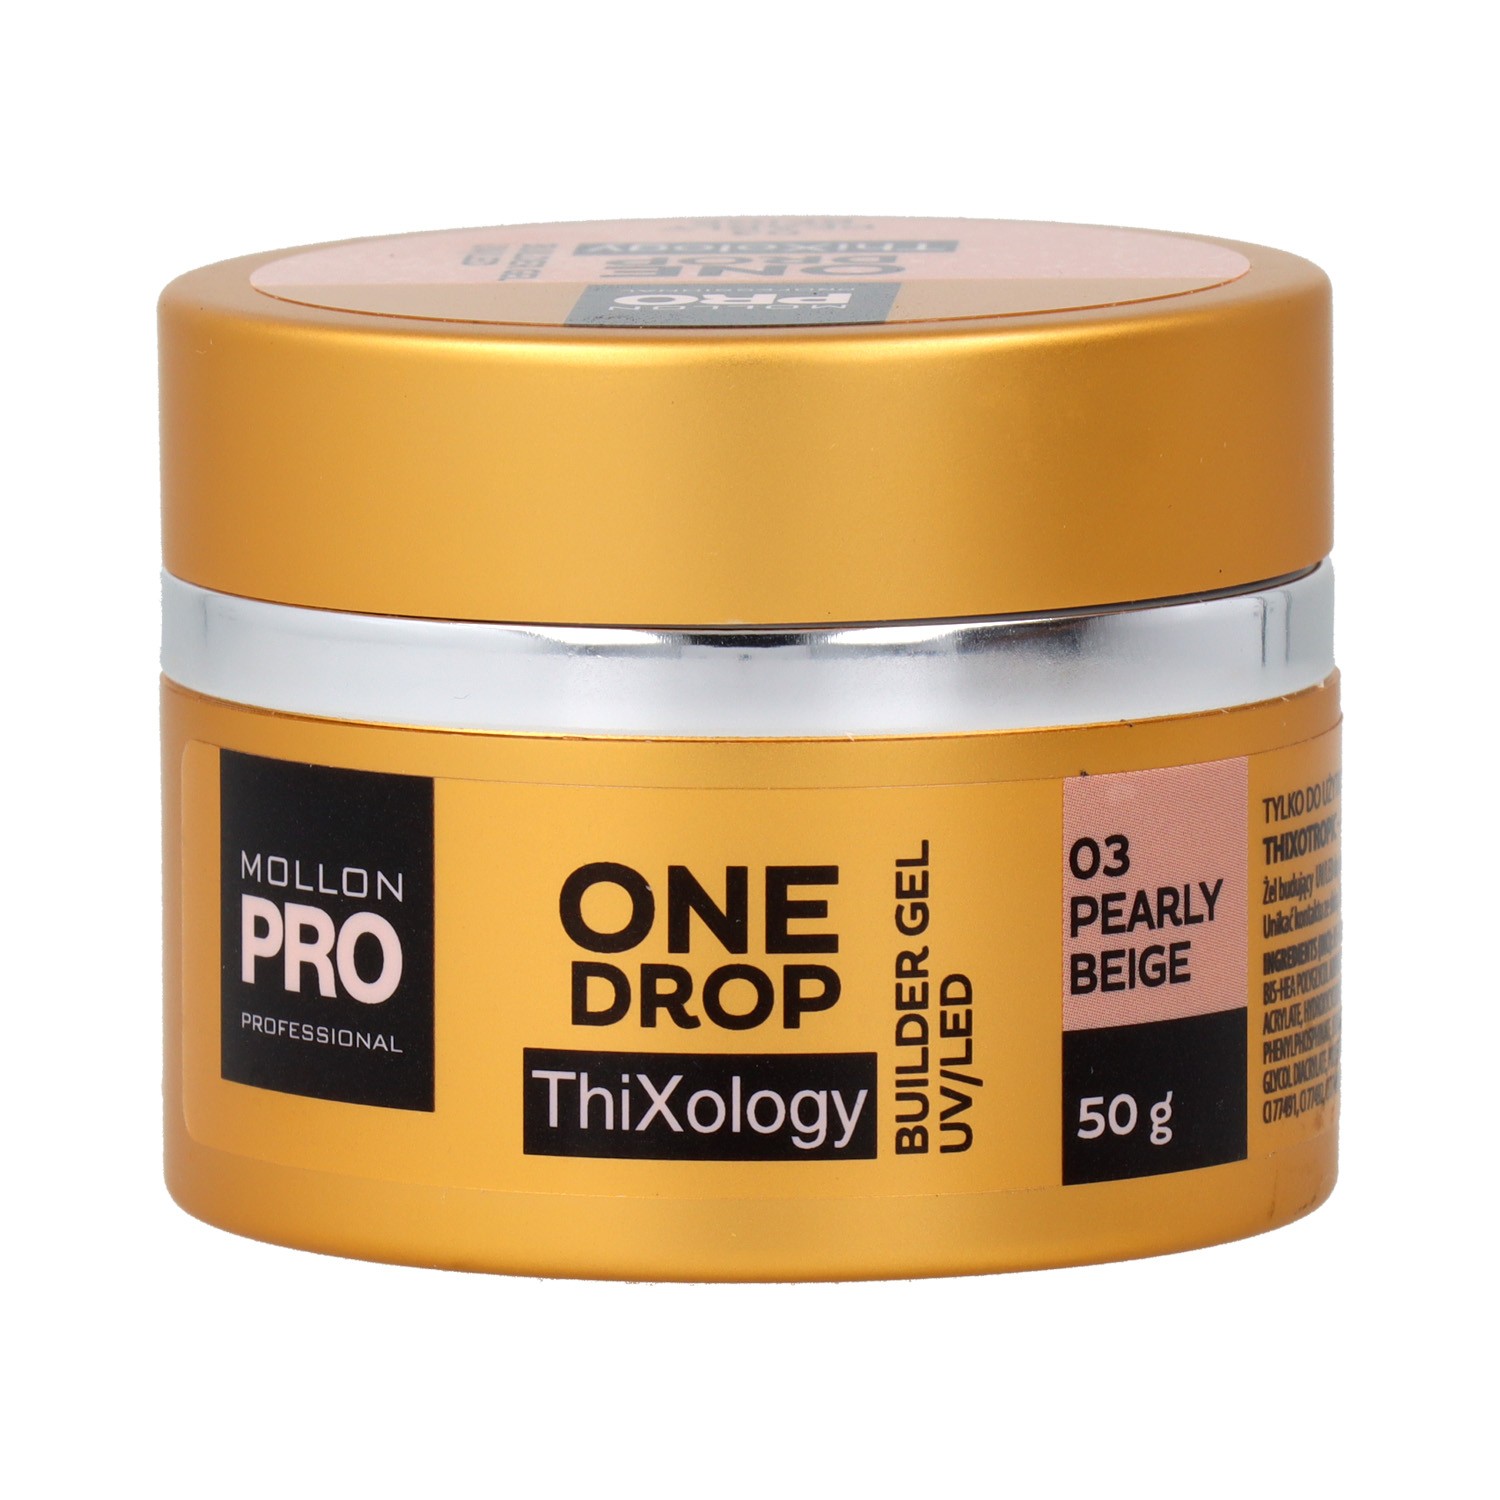 Mollon Pro One Drop Thixology Gel 03 Pearly Beige 50 gr